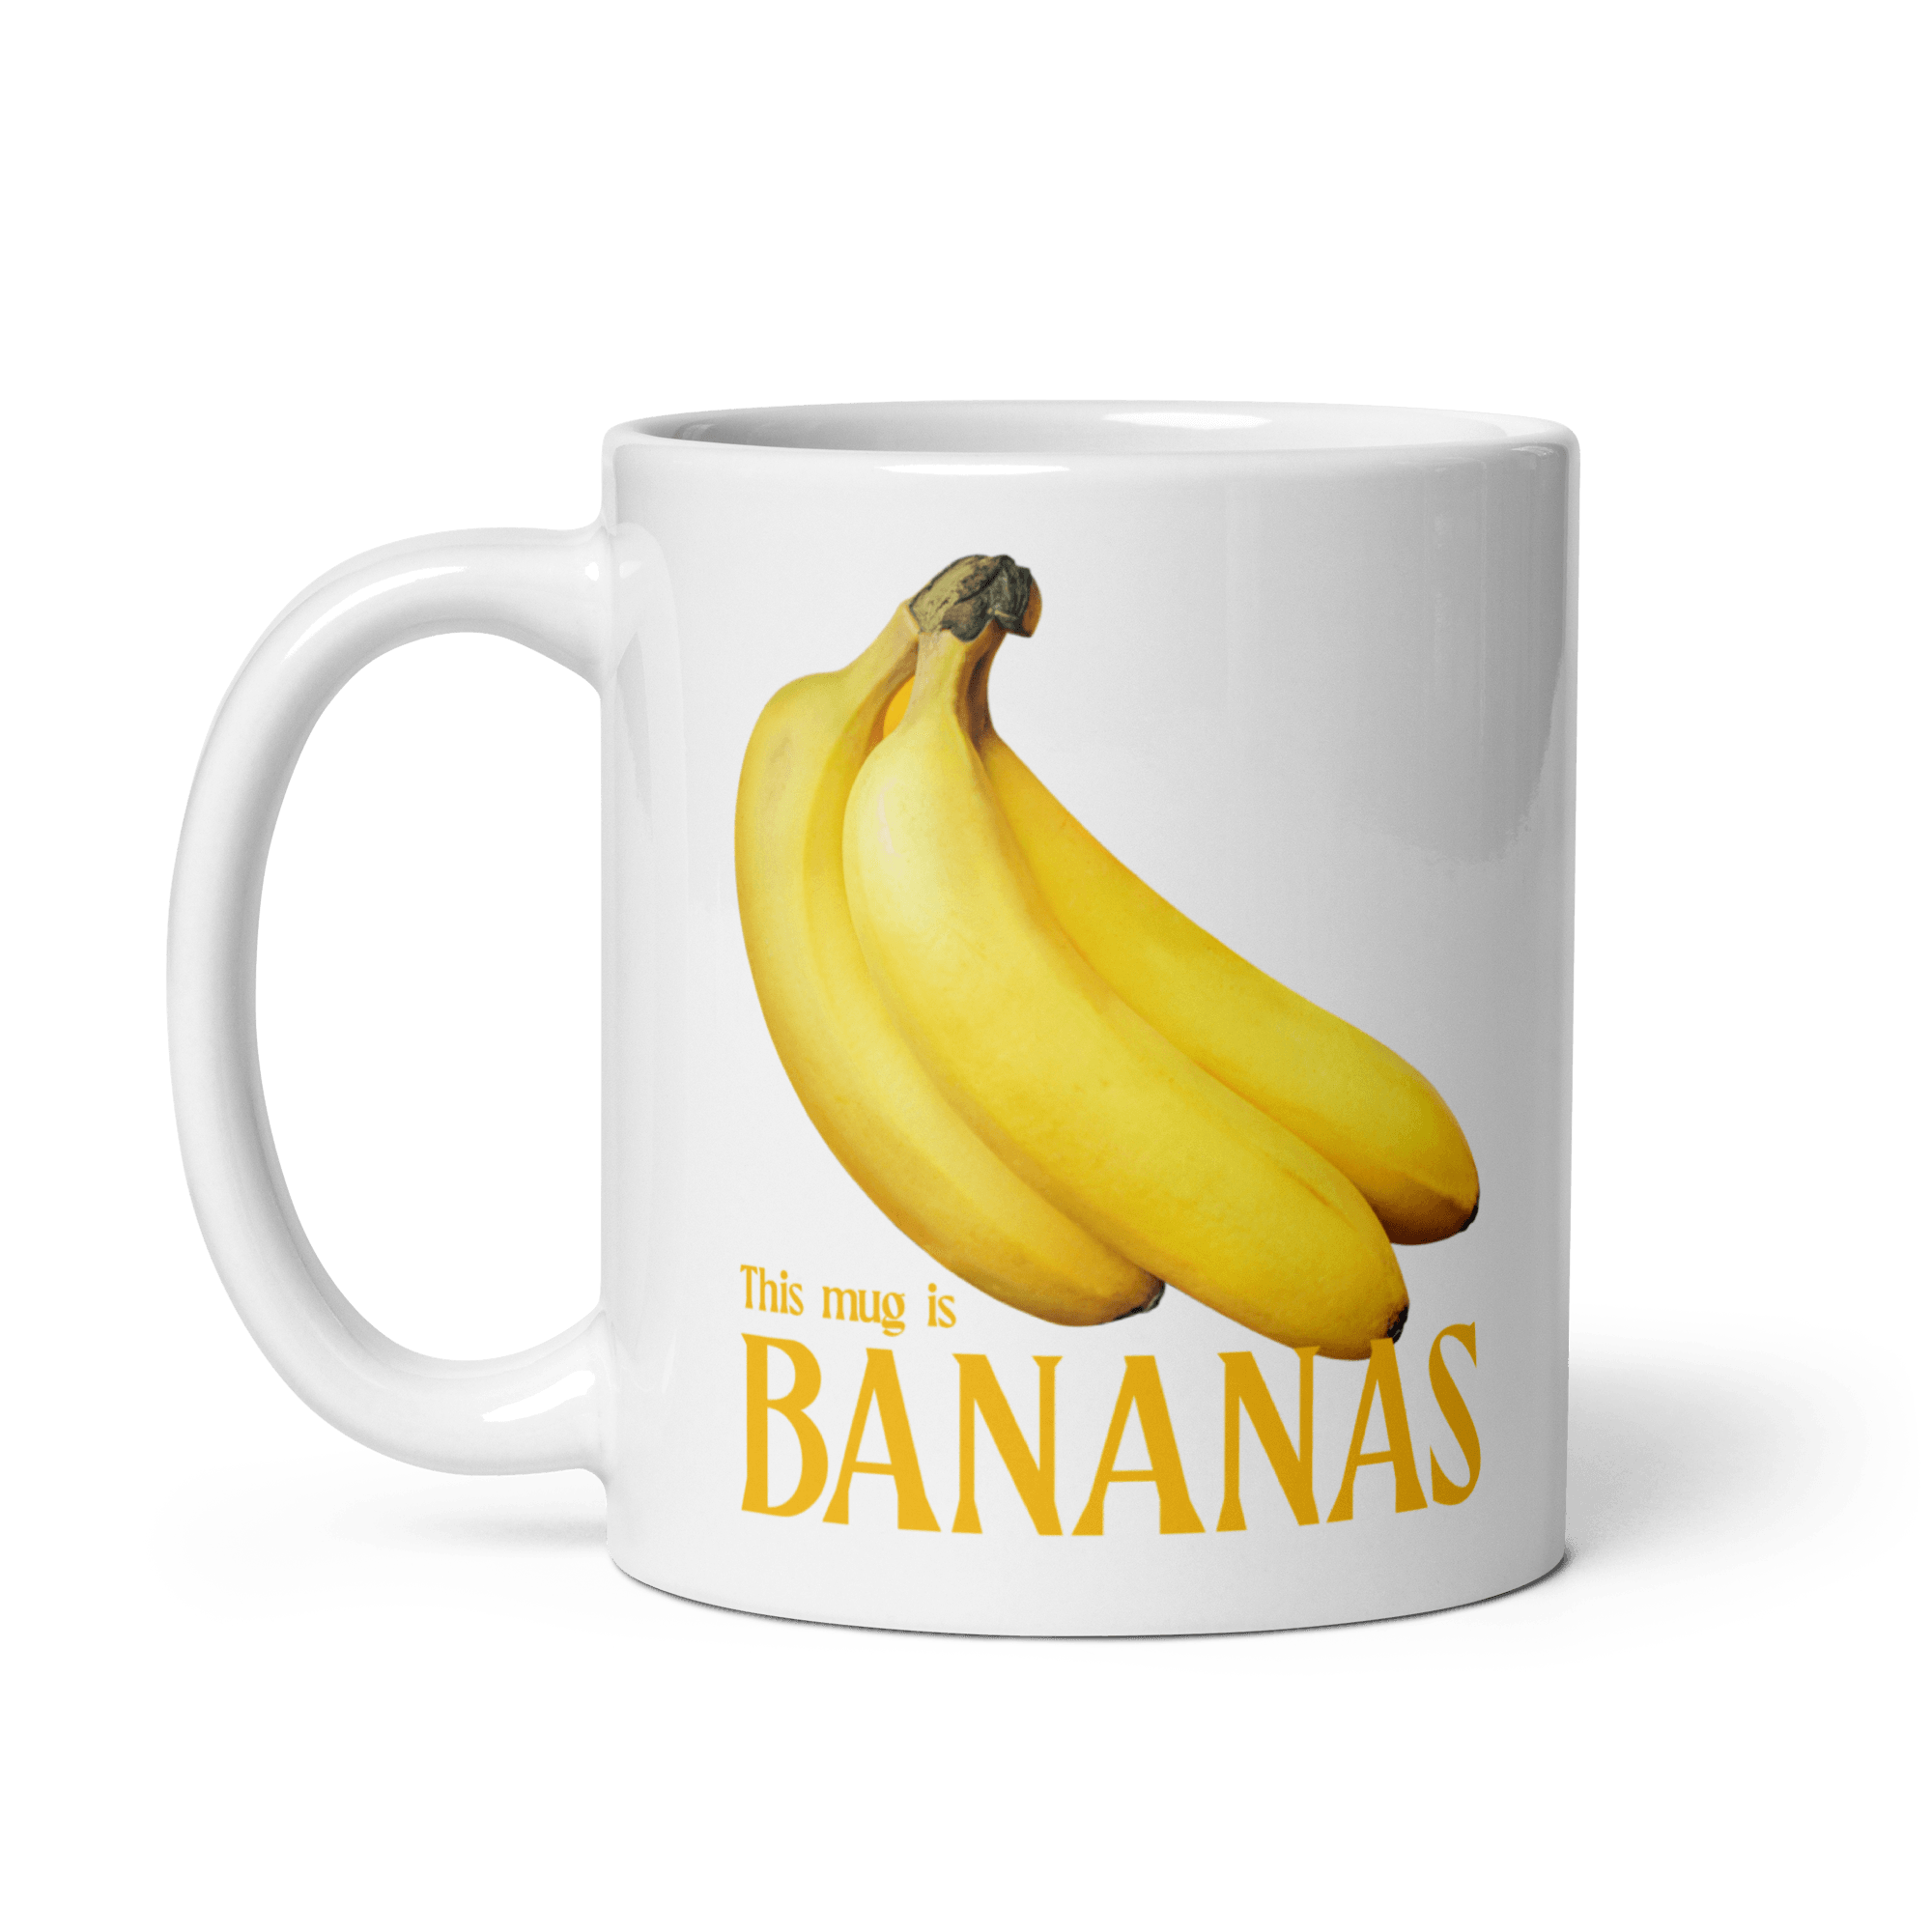 This mug is bananas 🍌 Coffee Mug - Polychrome Goods 🍊